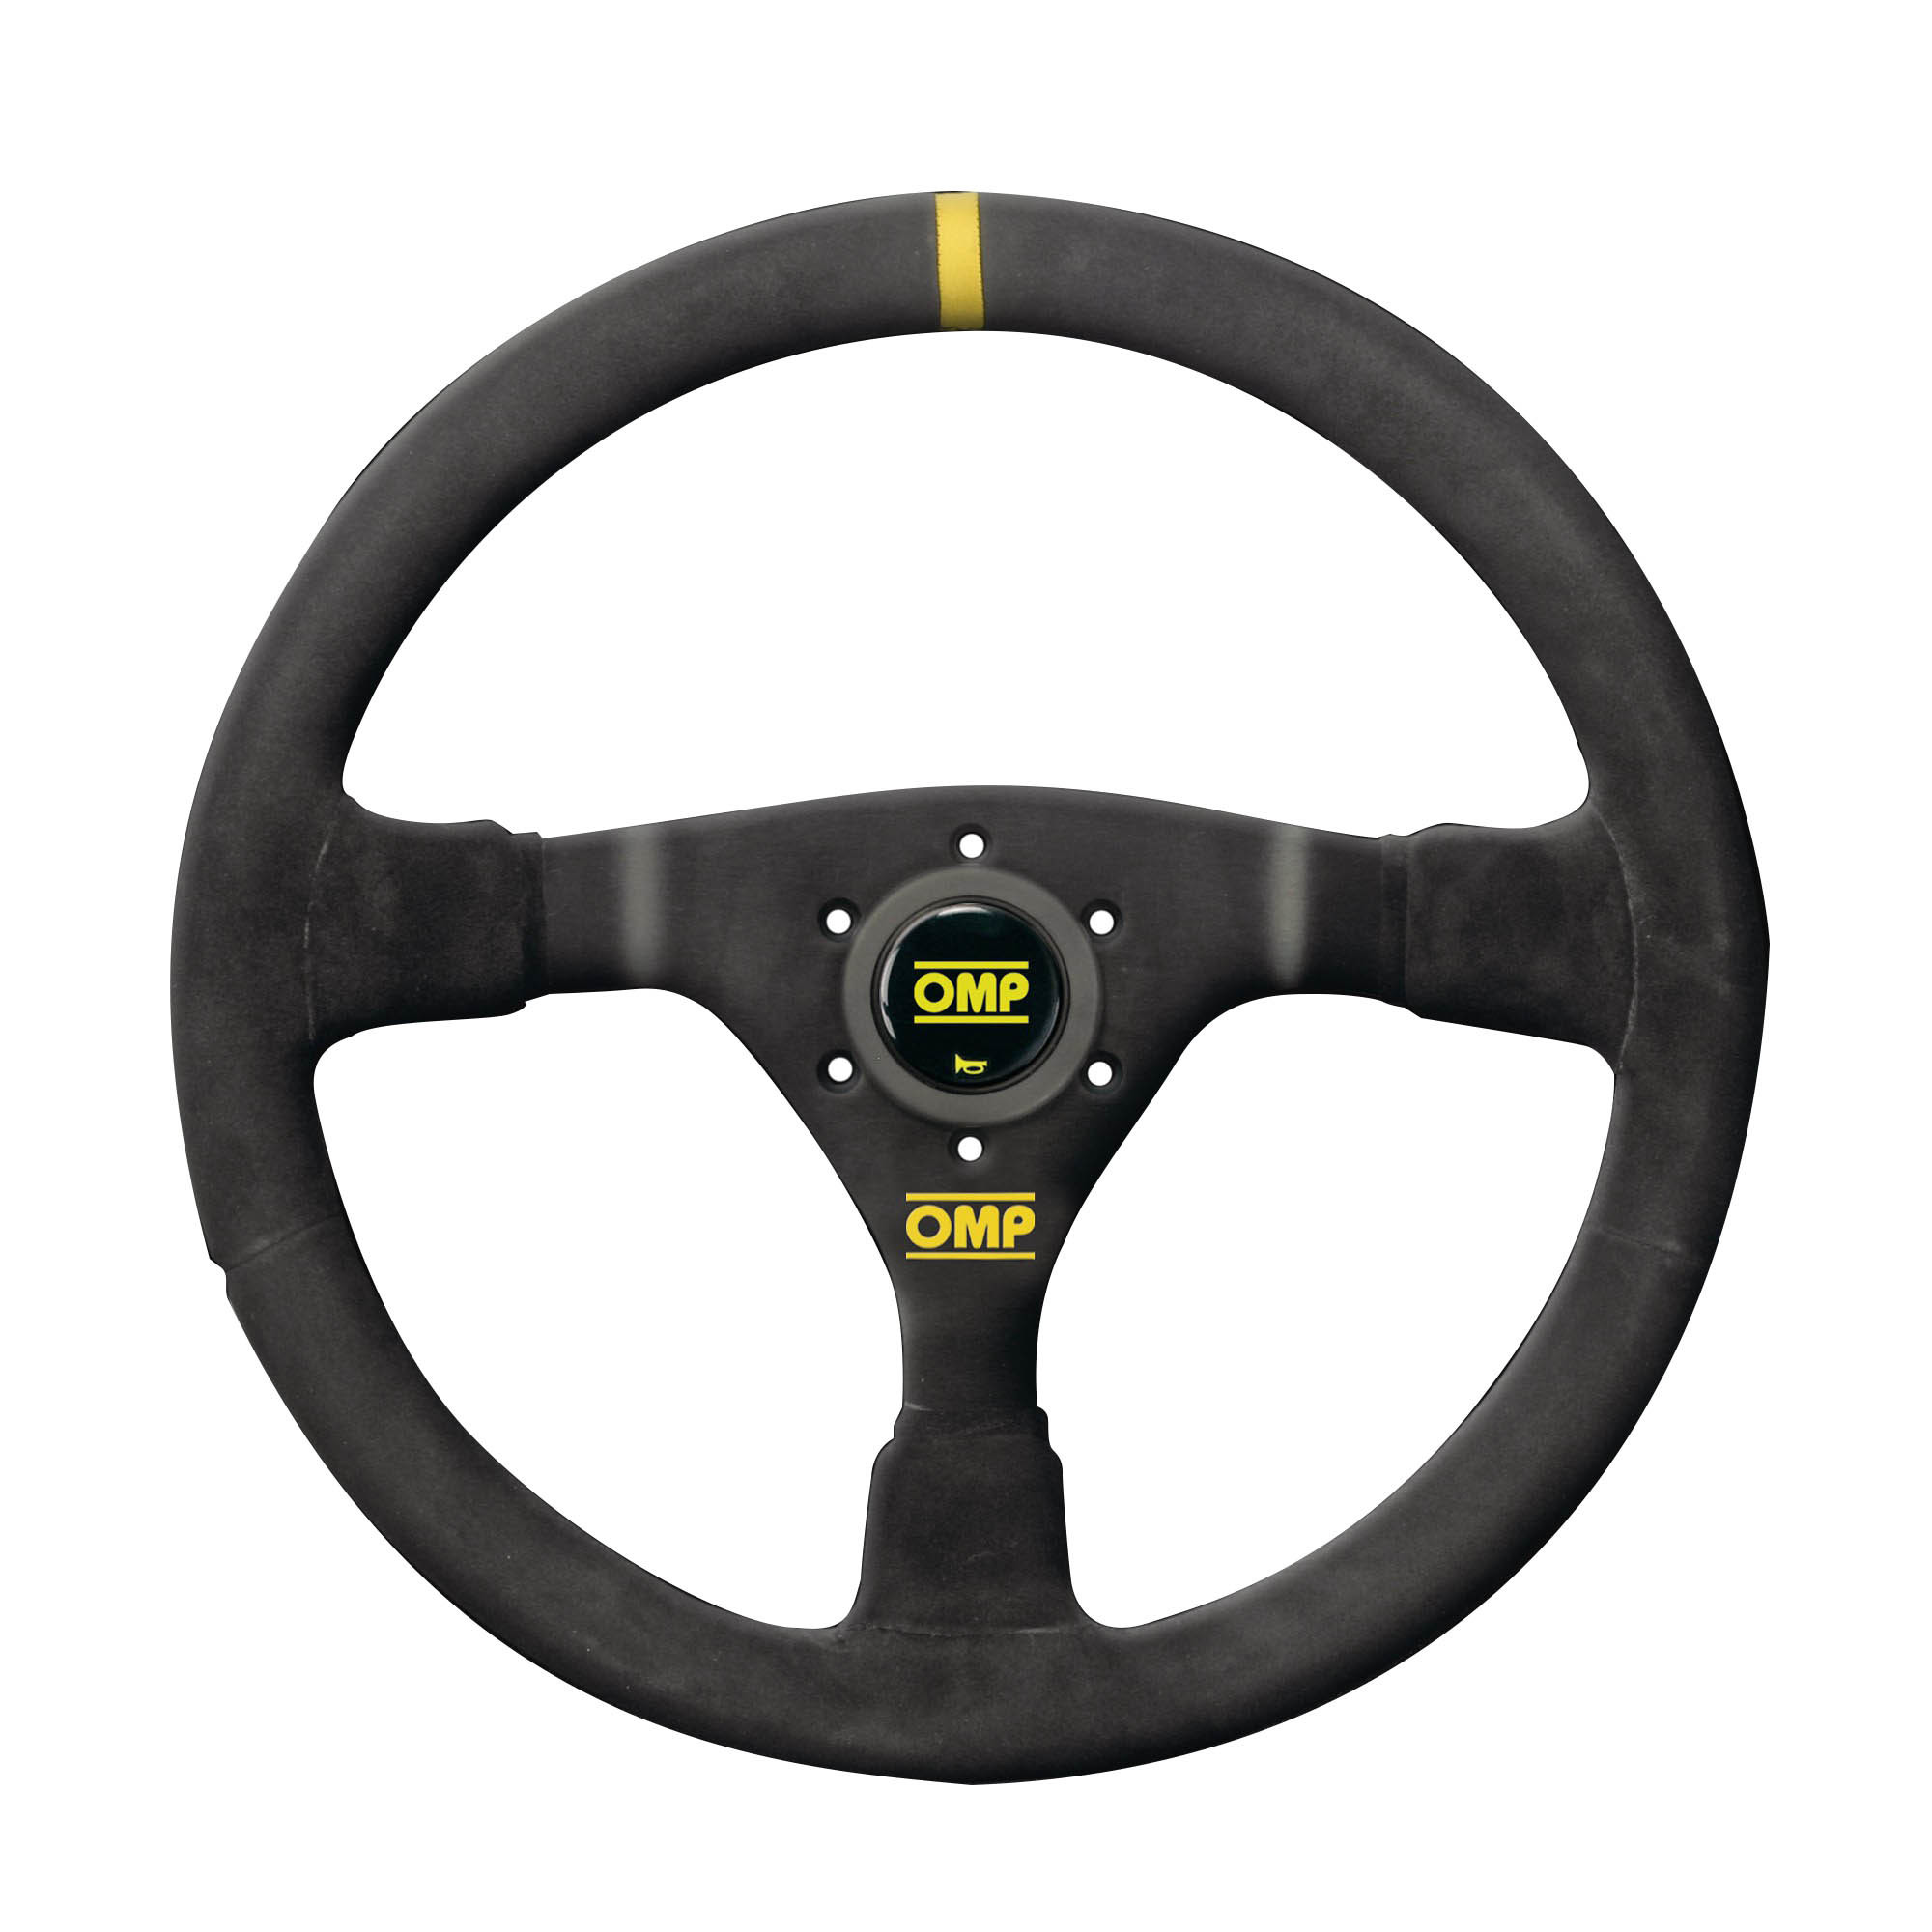 WRC Steering Wheel Black Suede